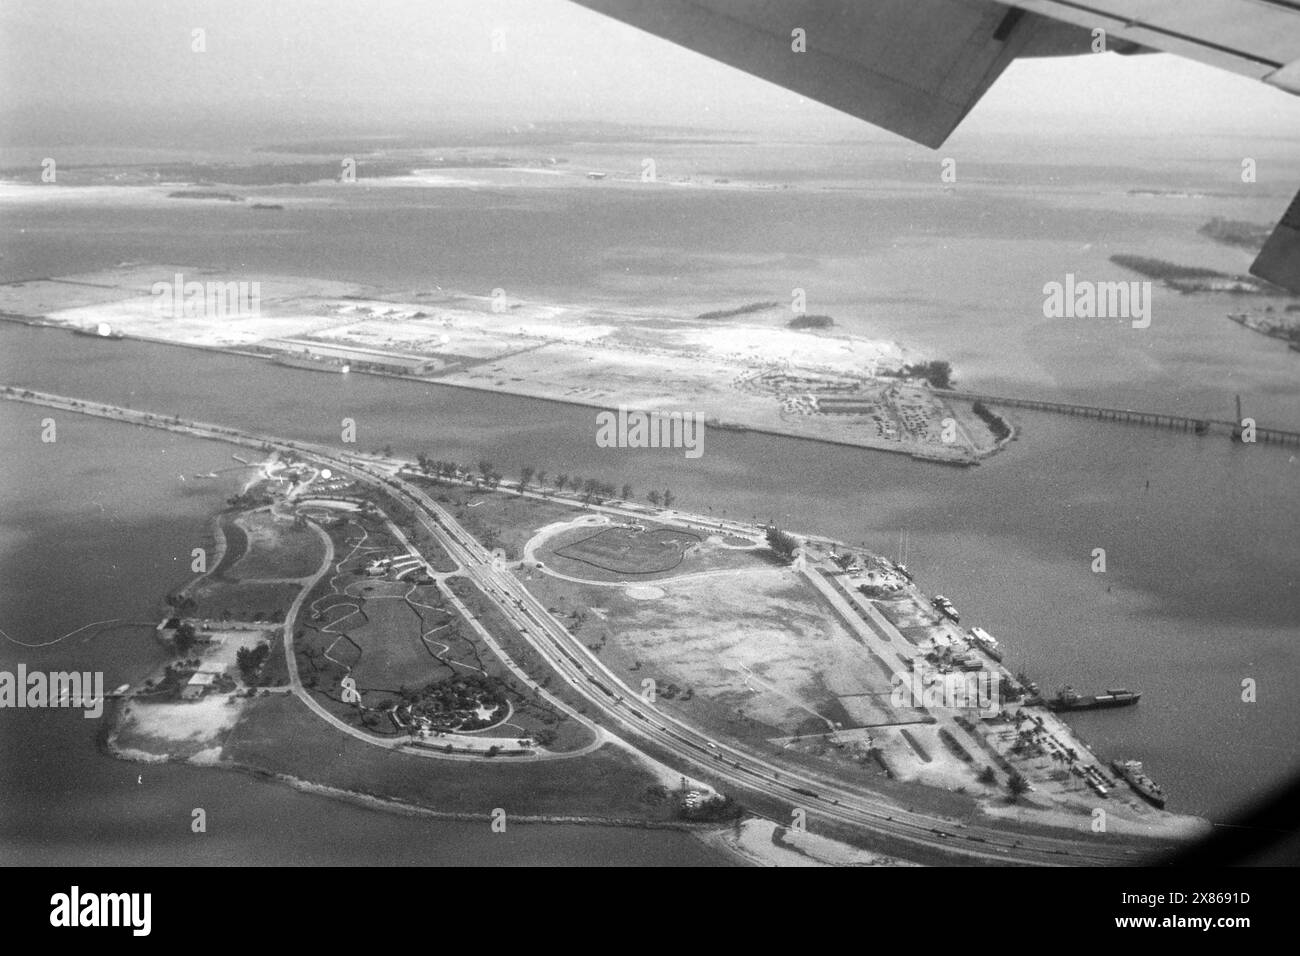 Blick auf die damals kaum bebauten künstlichen Inseln Watson Island und Dodge Island in der Biscayne Bay aus dem Fenster einer Pan am Maschine, Floride 1966. Vue des îles artificielles à peine développées de Watson Island et Dodge Island dans la baie de Biscayne depuis la fenêtre d'un avion Pan Am, Floride 1966. Banque D'Images